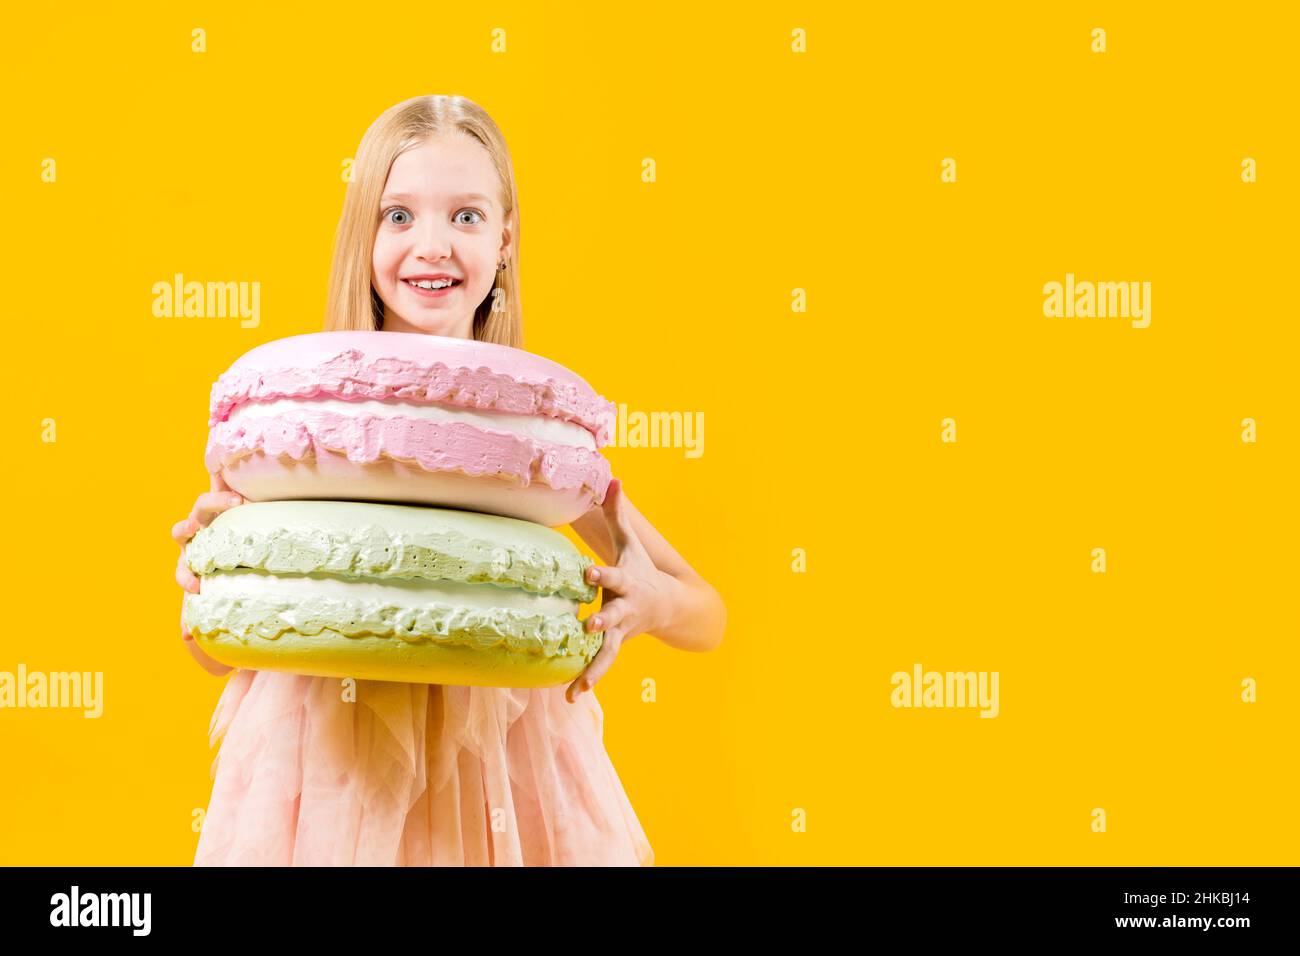 Regalo dulce. Una chica linda está sosteniendo dos enormes macaroons sobre un fondo amarillo. Postre redondo. Dulzura de Navidad. Foto de stock